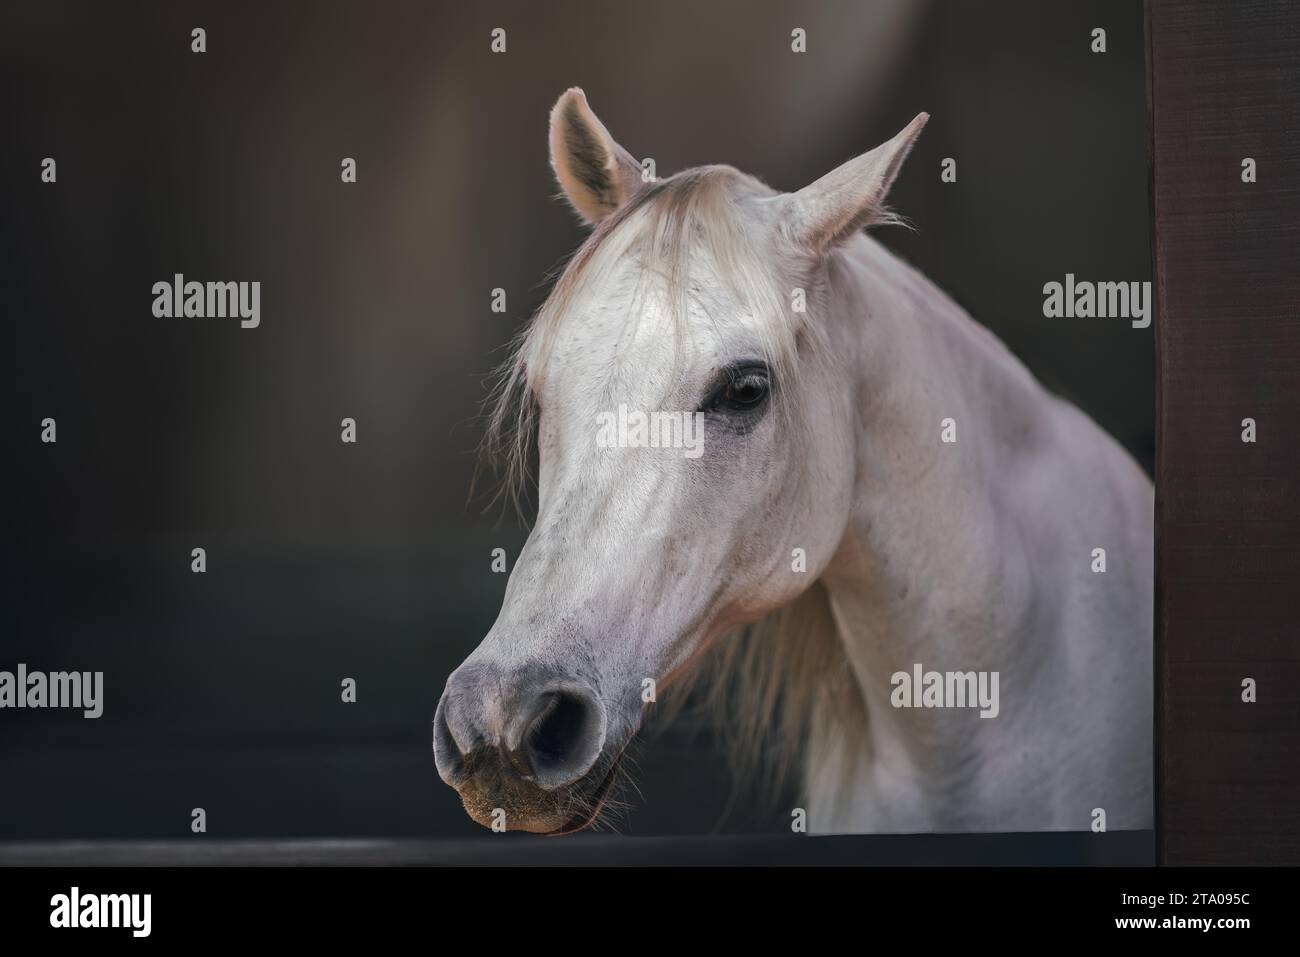 Beautiful White Horse Head (Equus ferus caballus) Stock Photo